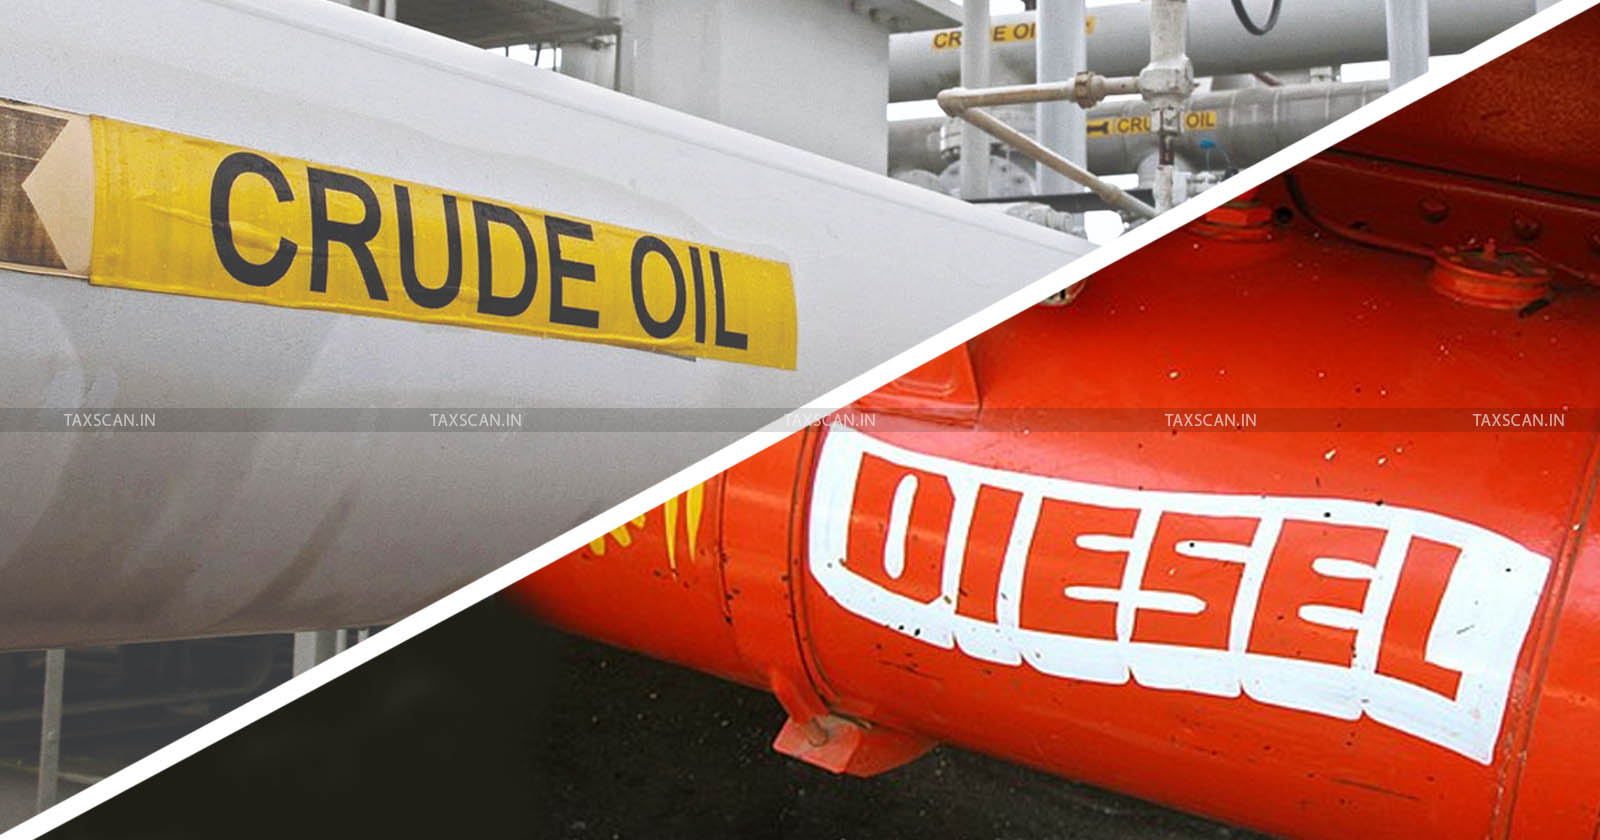 Sets Windfall Tax - Windfall Tax - Crude - Crude Oil Updates - Crude Oil News - Tax On Diesel - TAXSCAN